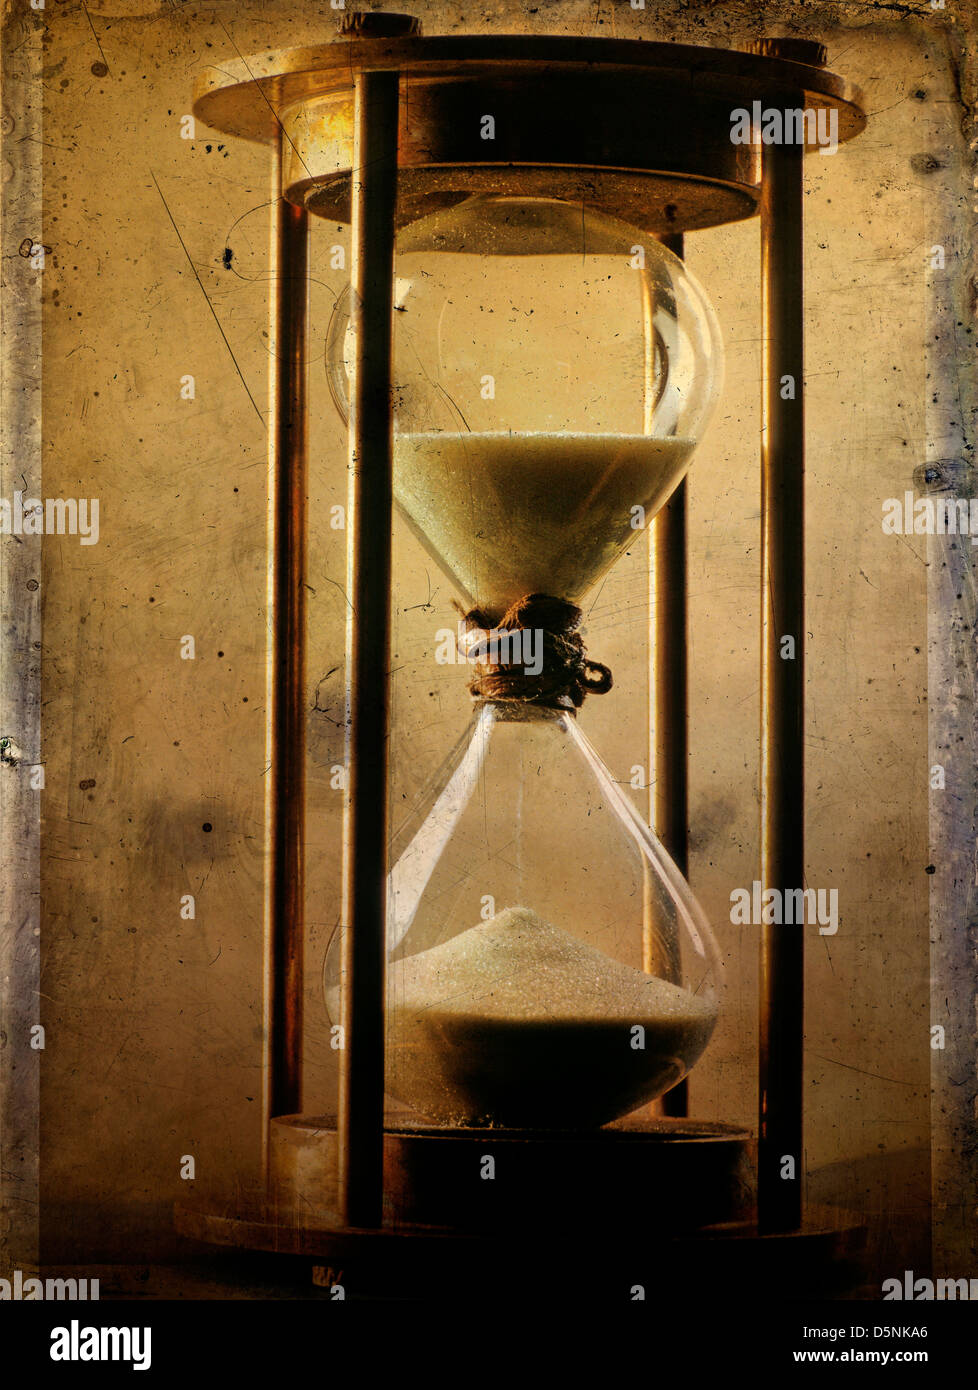 Hourglass Stock Photo